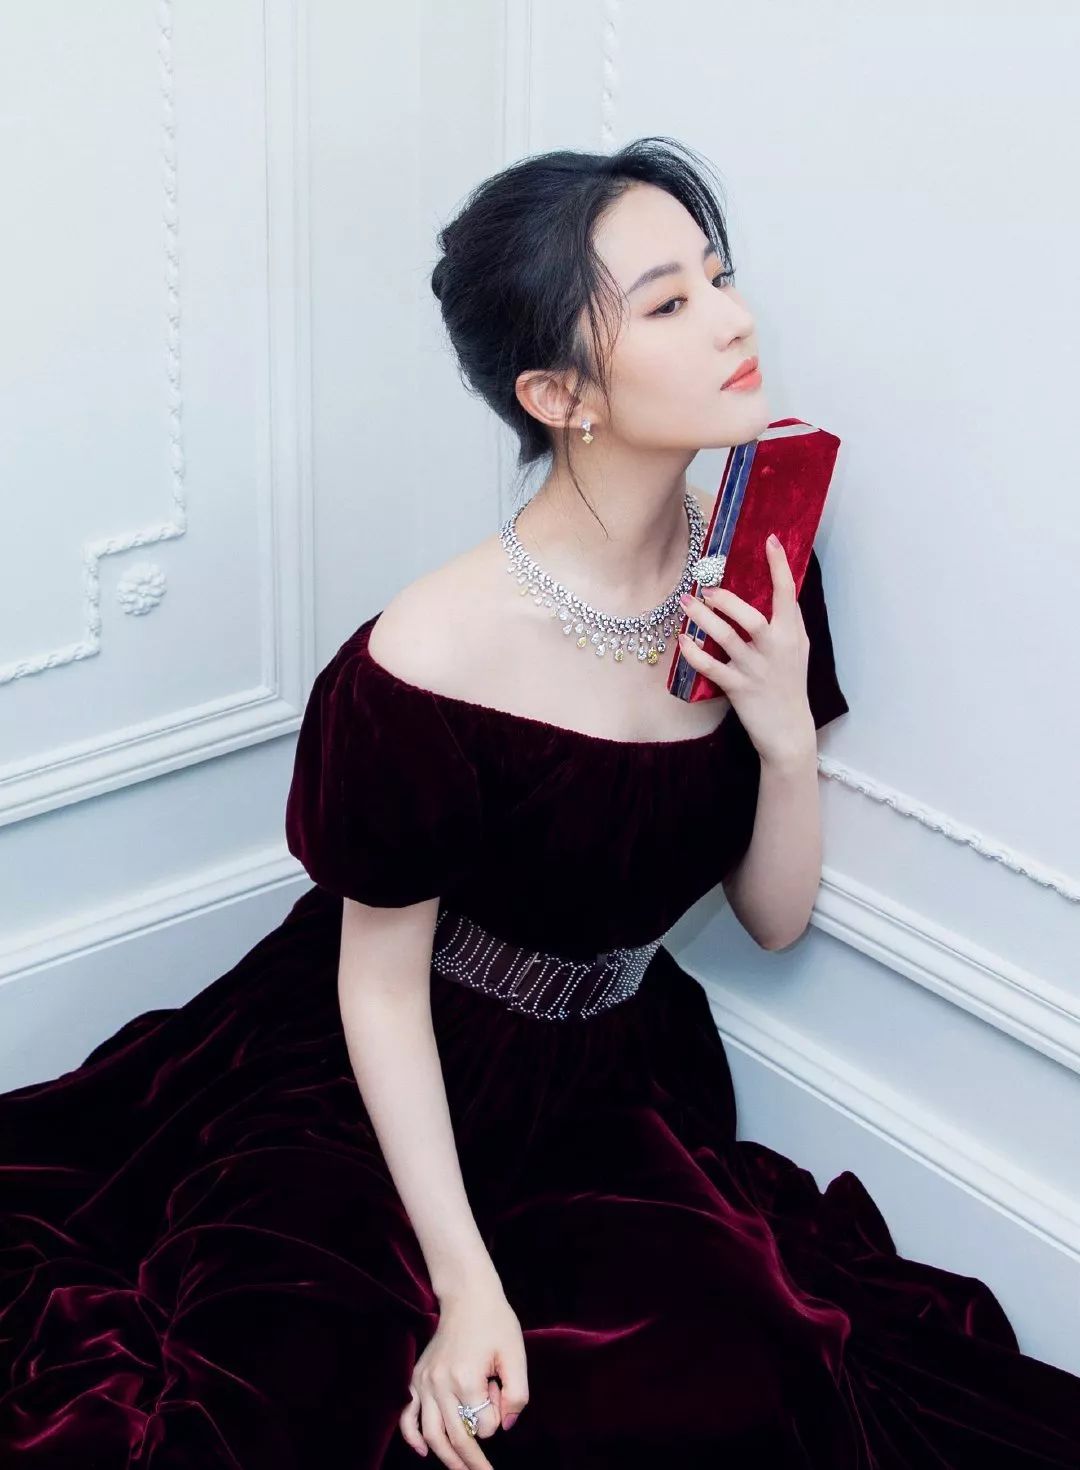 宝格丽_宝格丽Bridal新款系列展在上海揭幕 刘亦菲优雅亮相 见证意式浪漫|腕表之家-珠宝